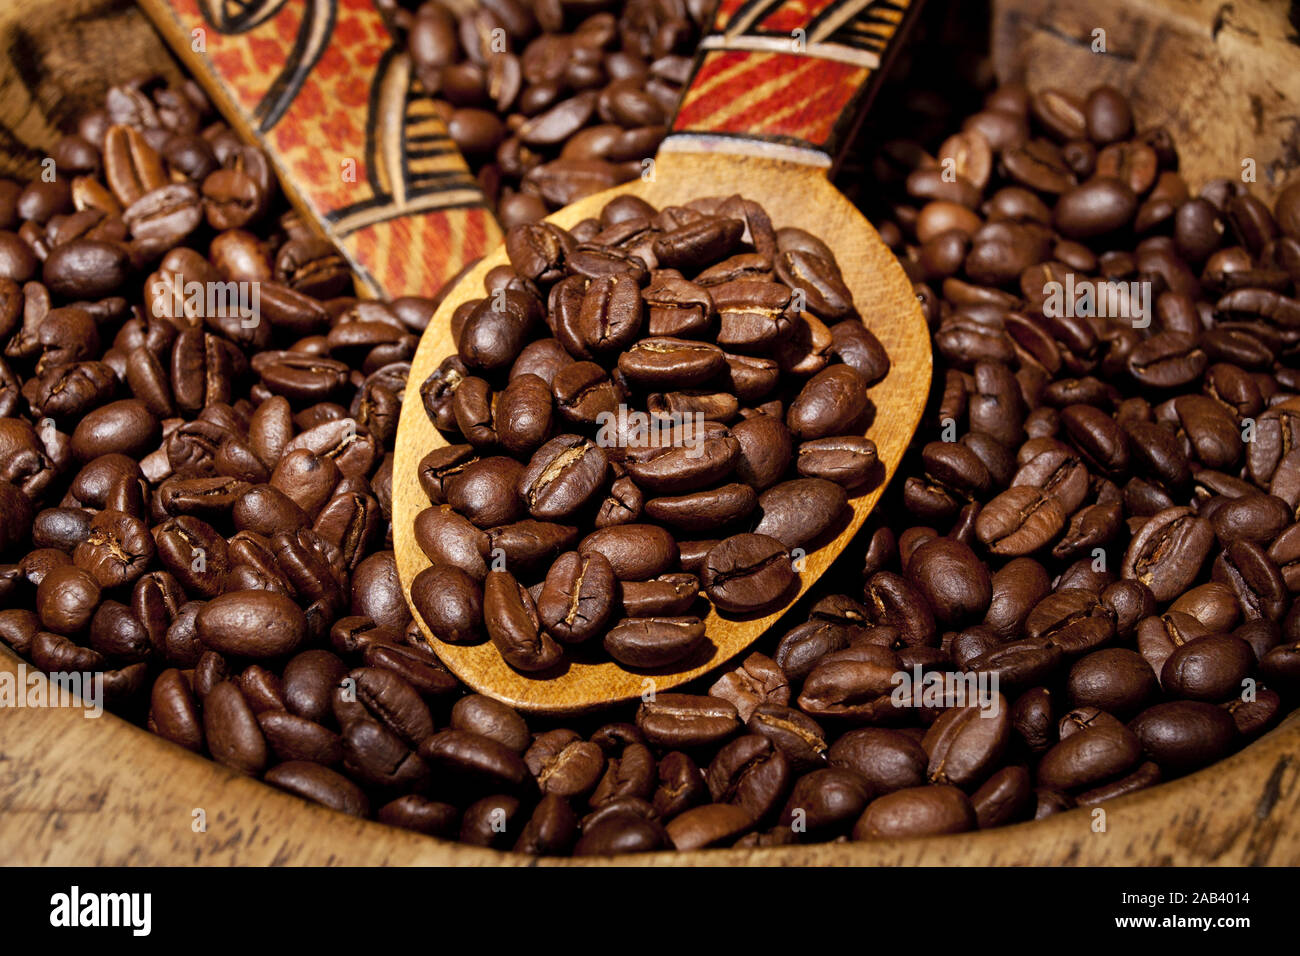 Frisch geroestete Kaffeebohnen auf einem Holzloeffel |Freshly roasted coffee beans on a wooden spoon| Stock Photo